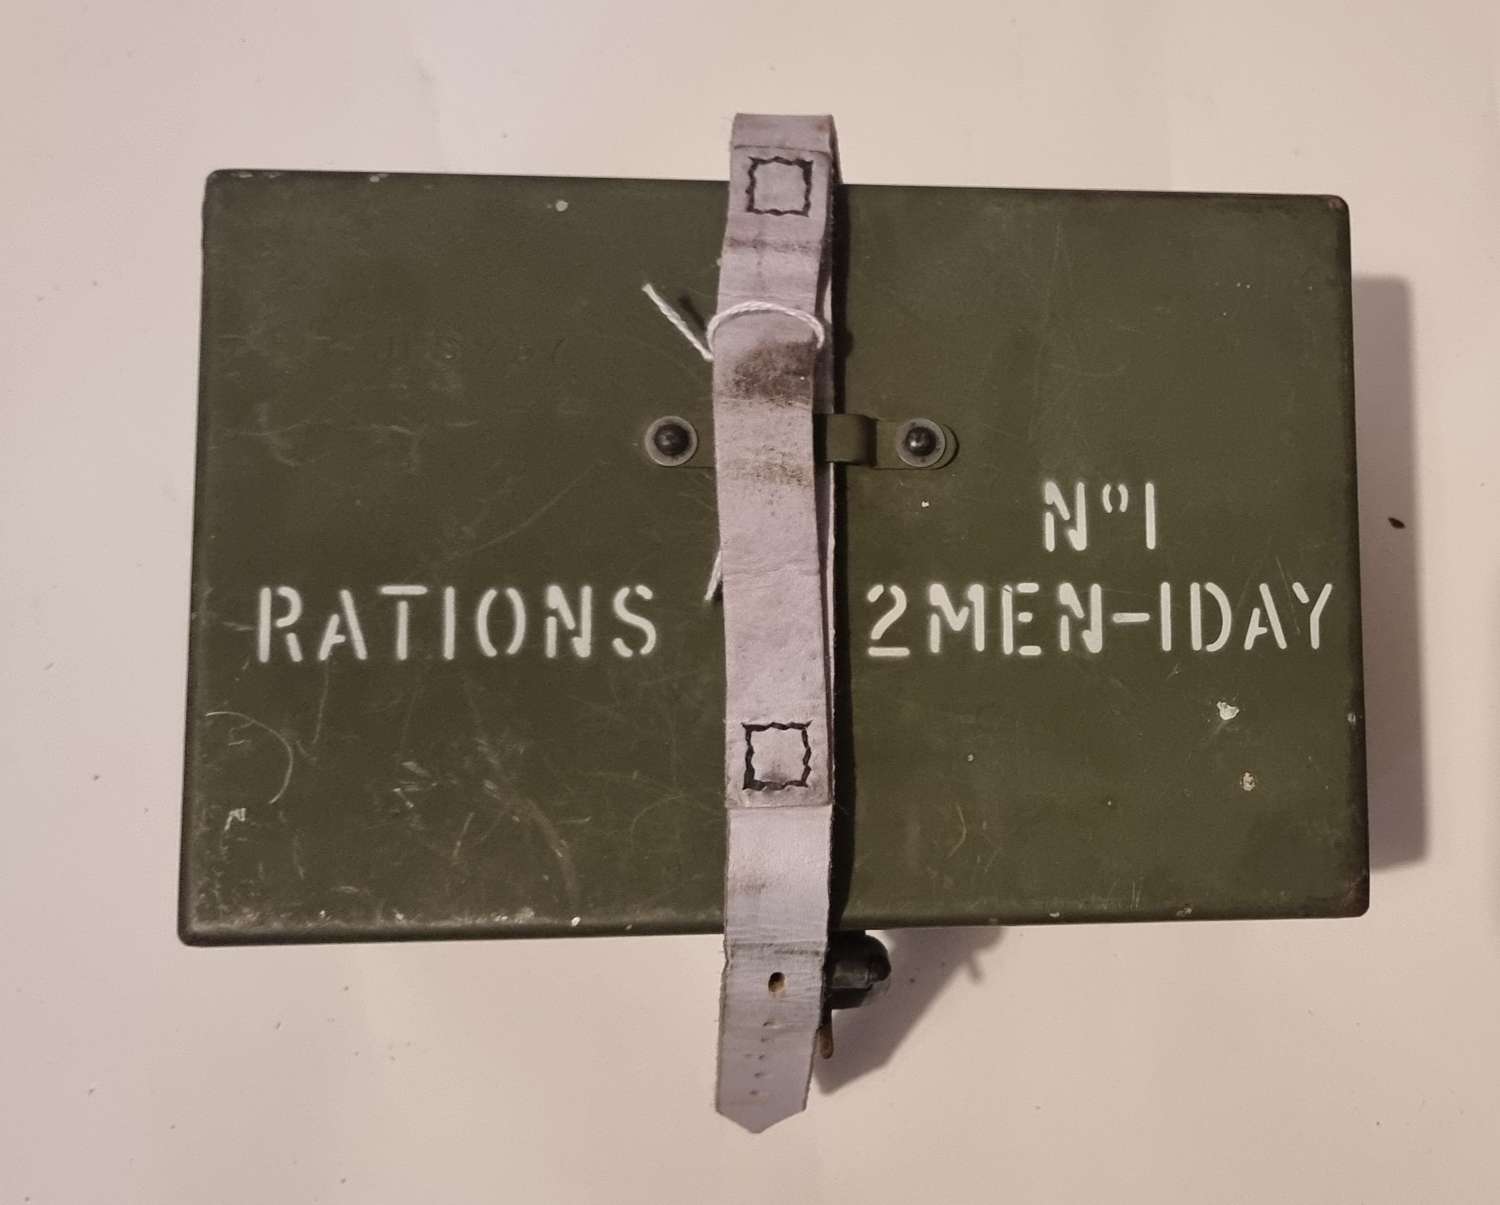 British 2 men 1 day ration tin